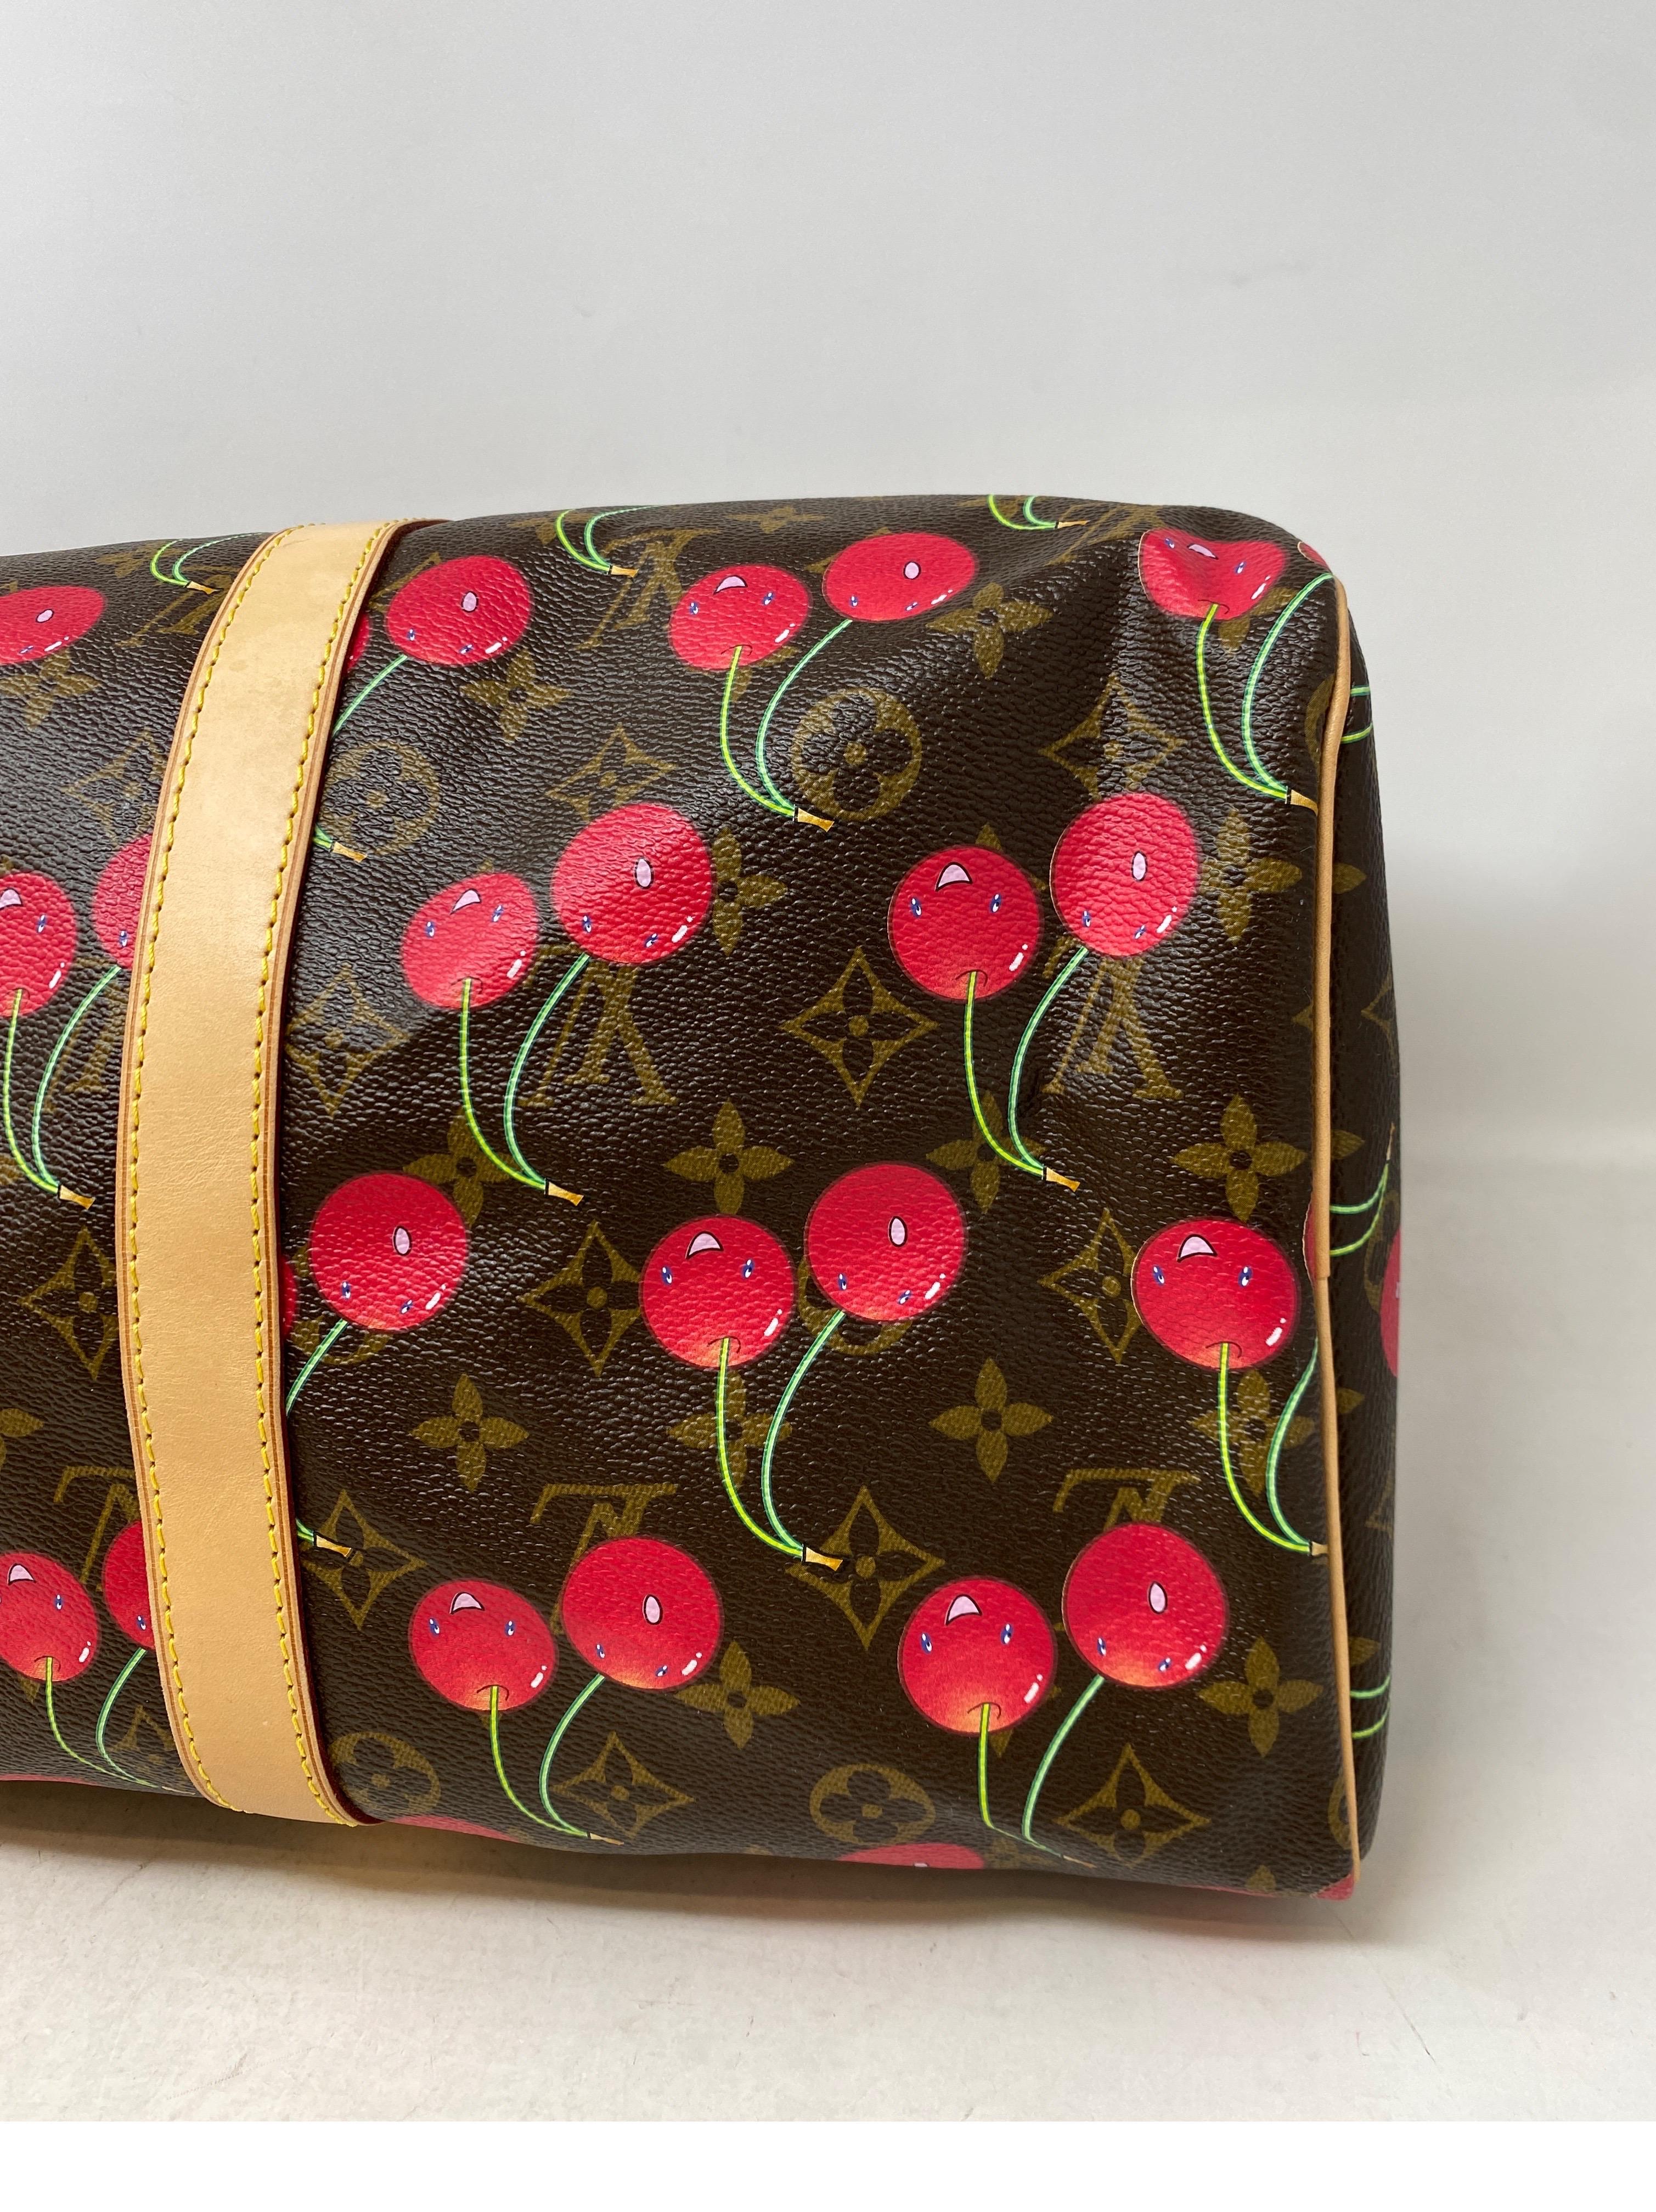 Louis Vuitton Cherry Keepall 50 Bag  5